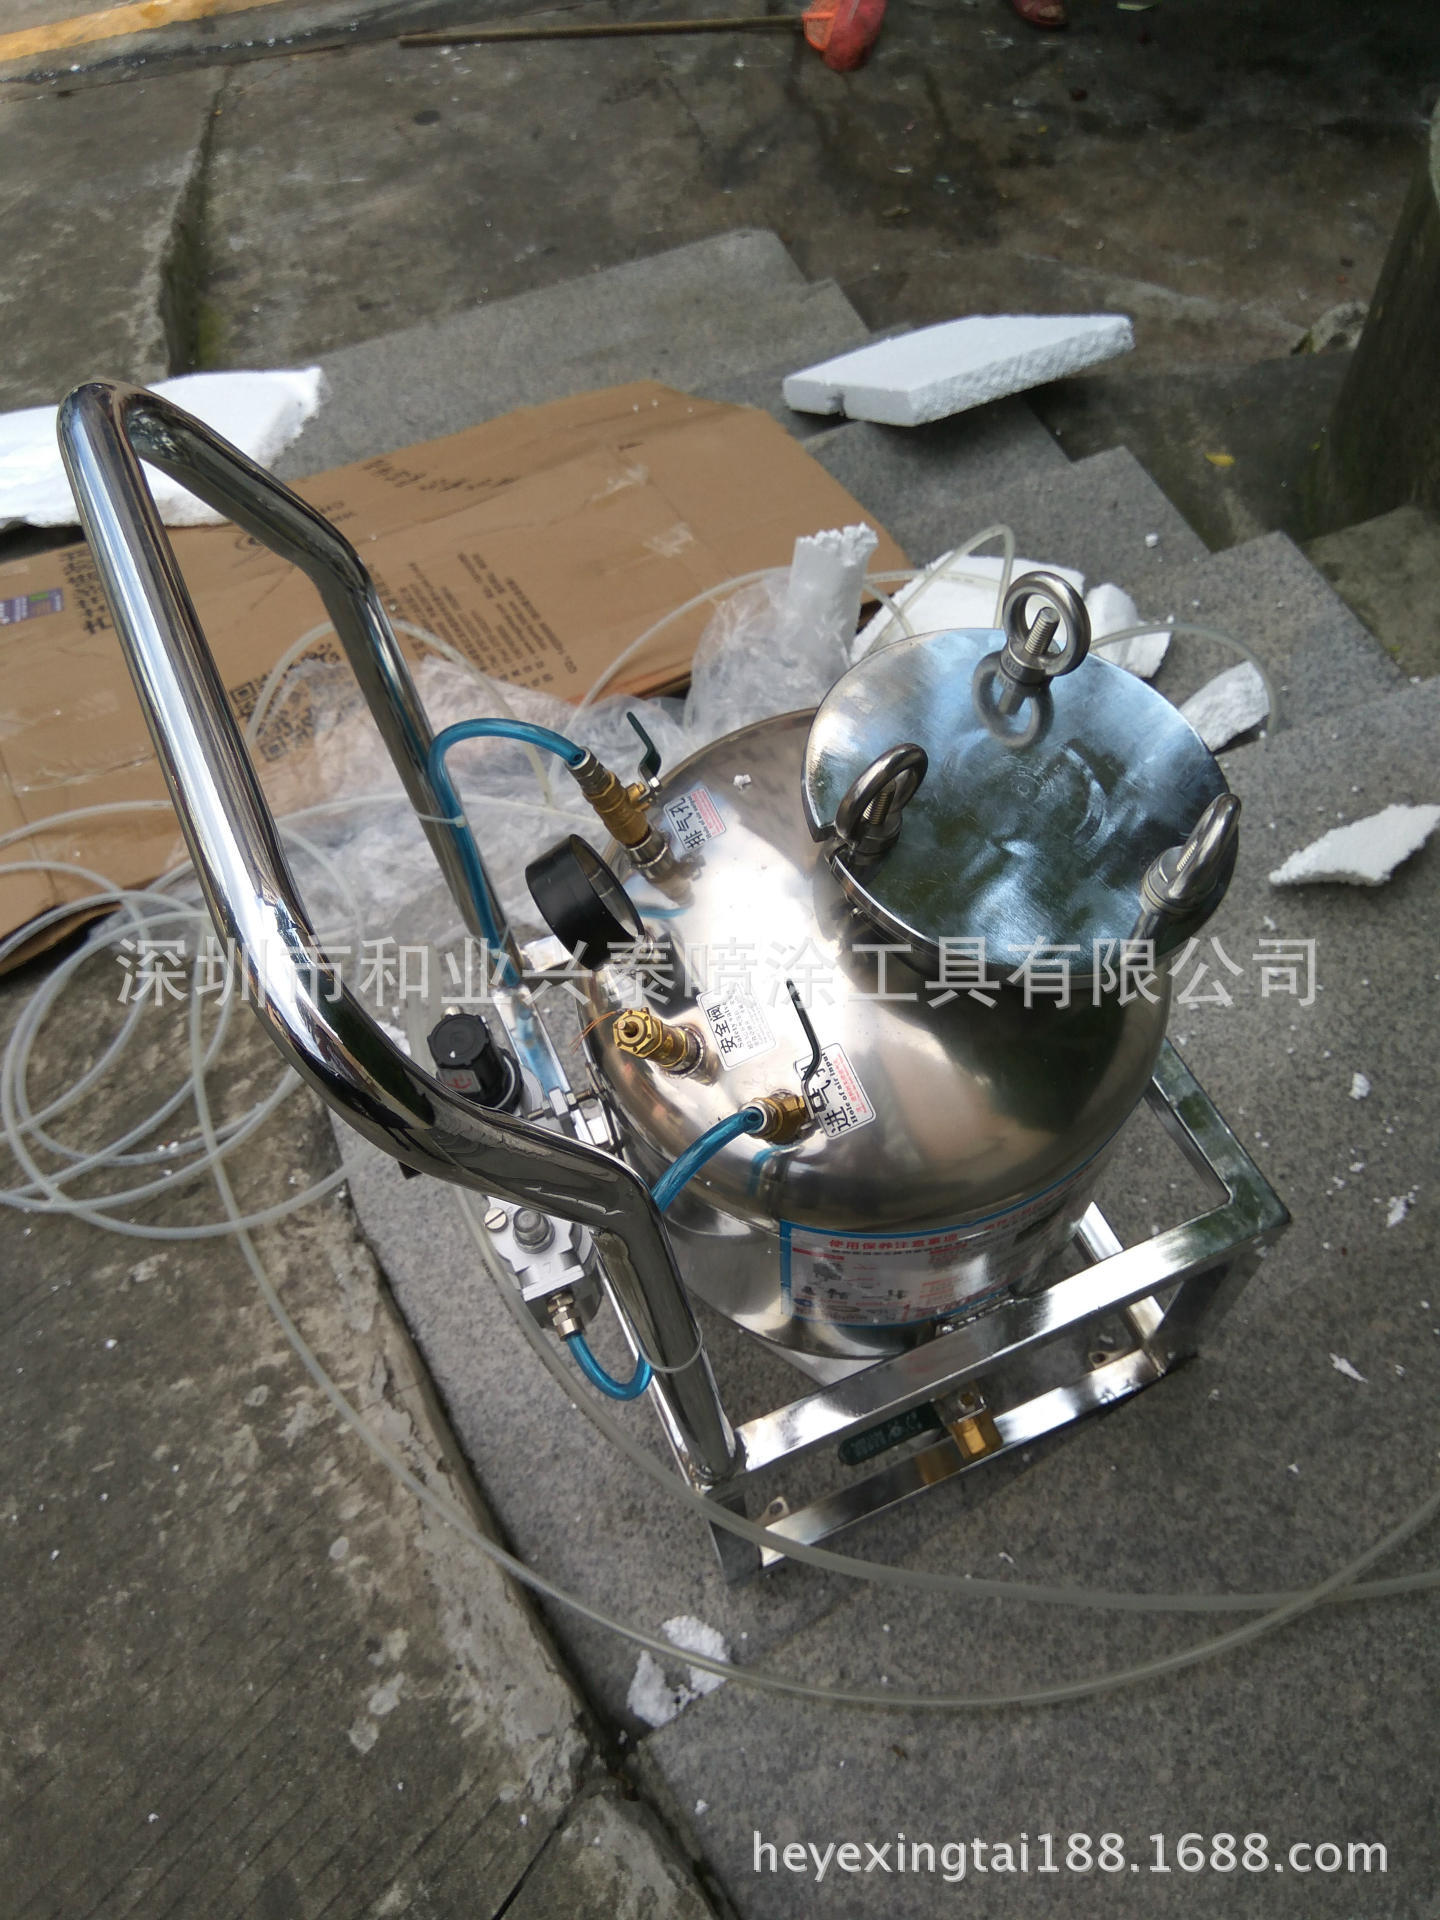 台湾众志喷胶机 出胶稳定好  整套齐全优质喷胶机批发 价格实惠|ms